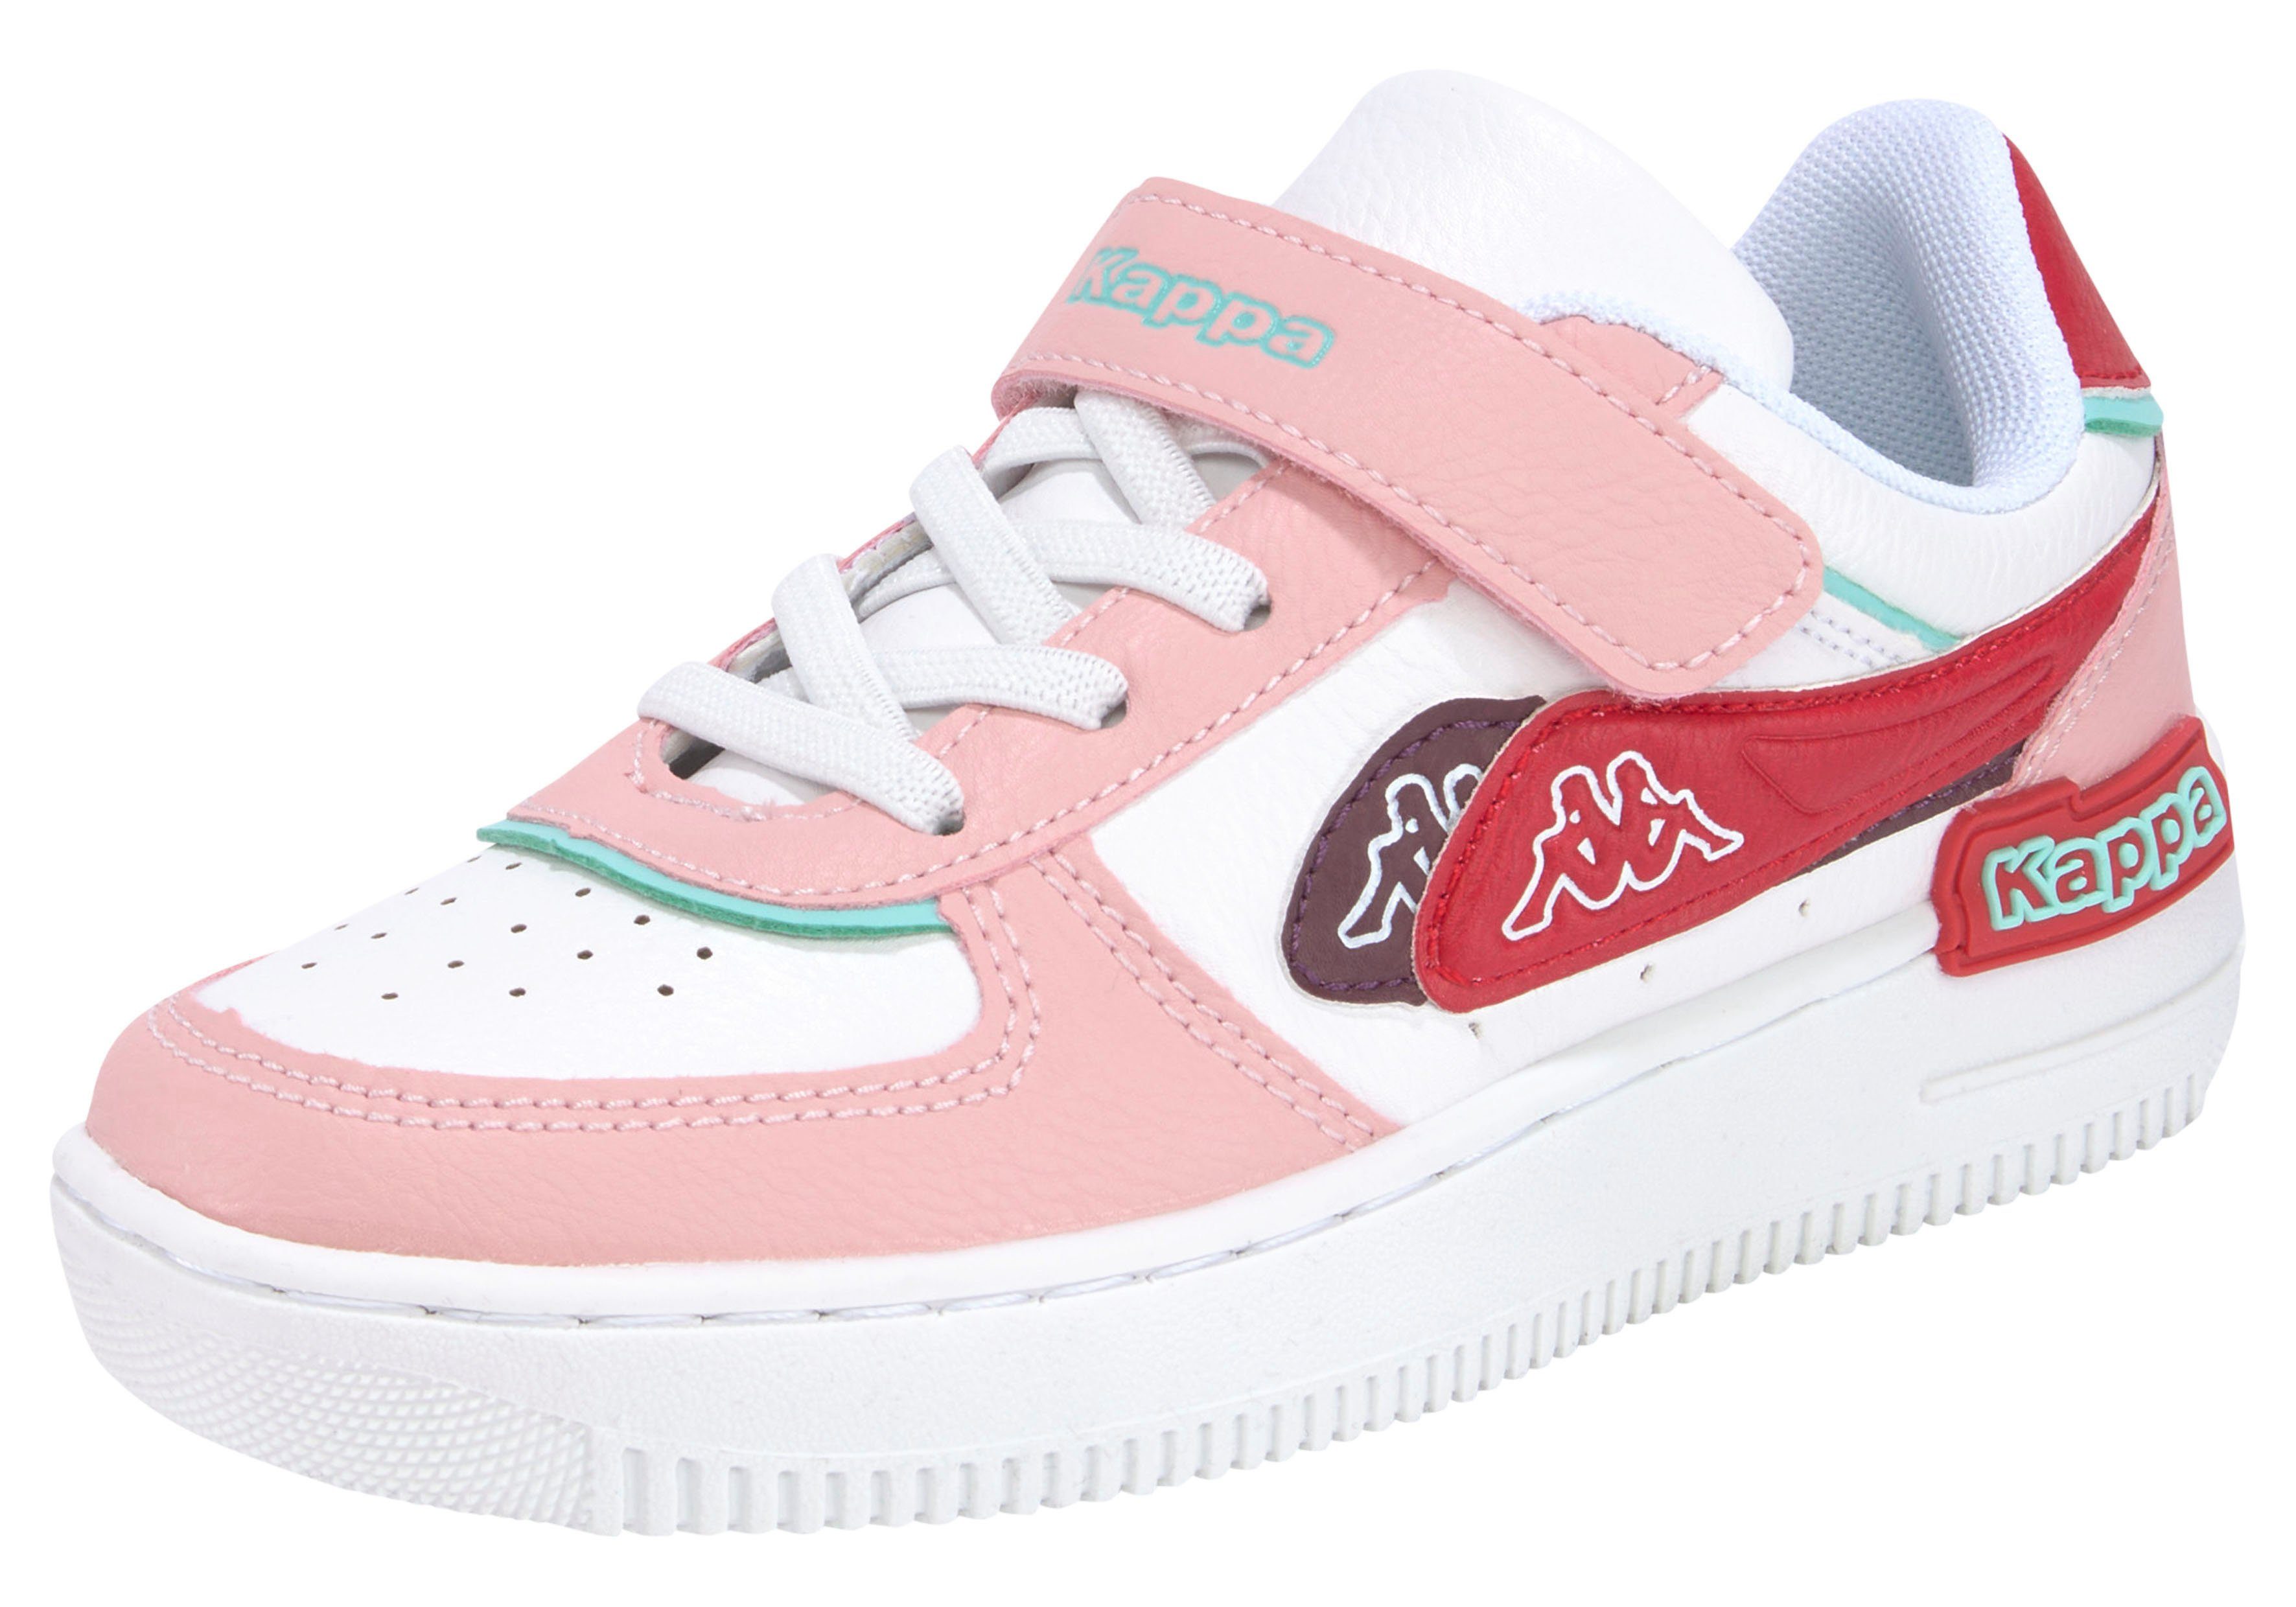 beliebte Marken Kappa Sneaker rosa-weiß